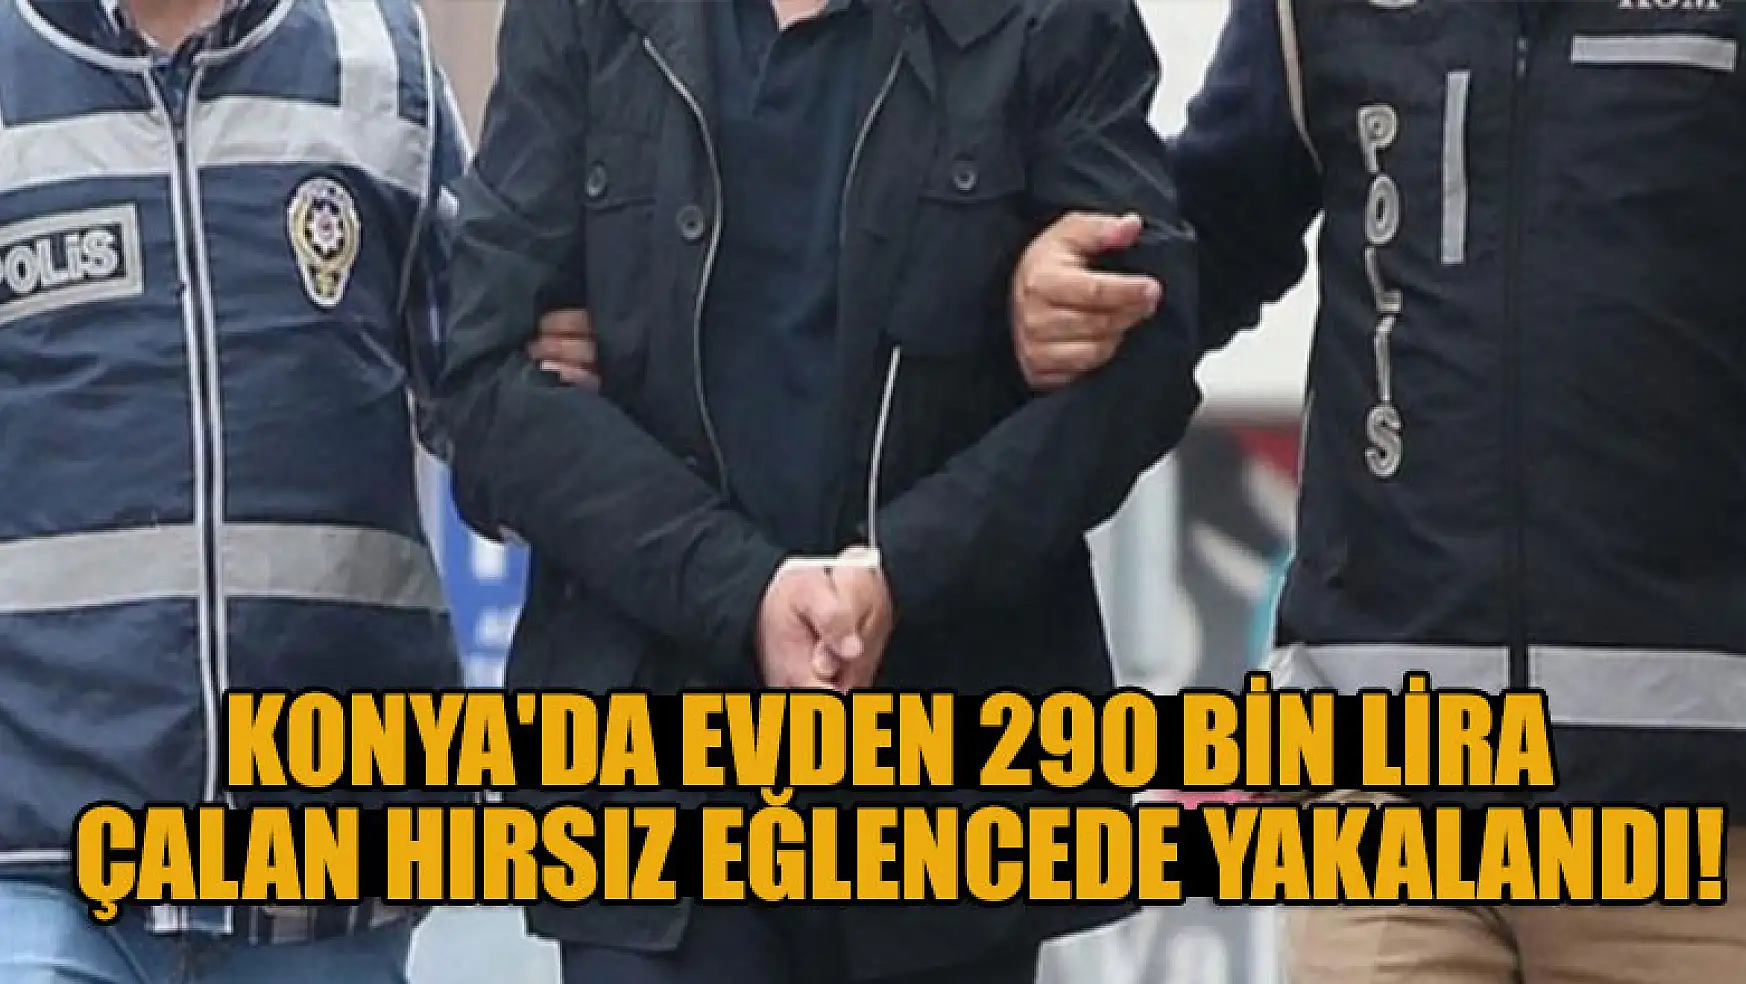 Konya'da evden 290 bin lira çalan hırsızlık zanlısı eğlencede yakalandı